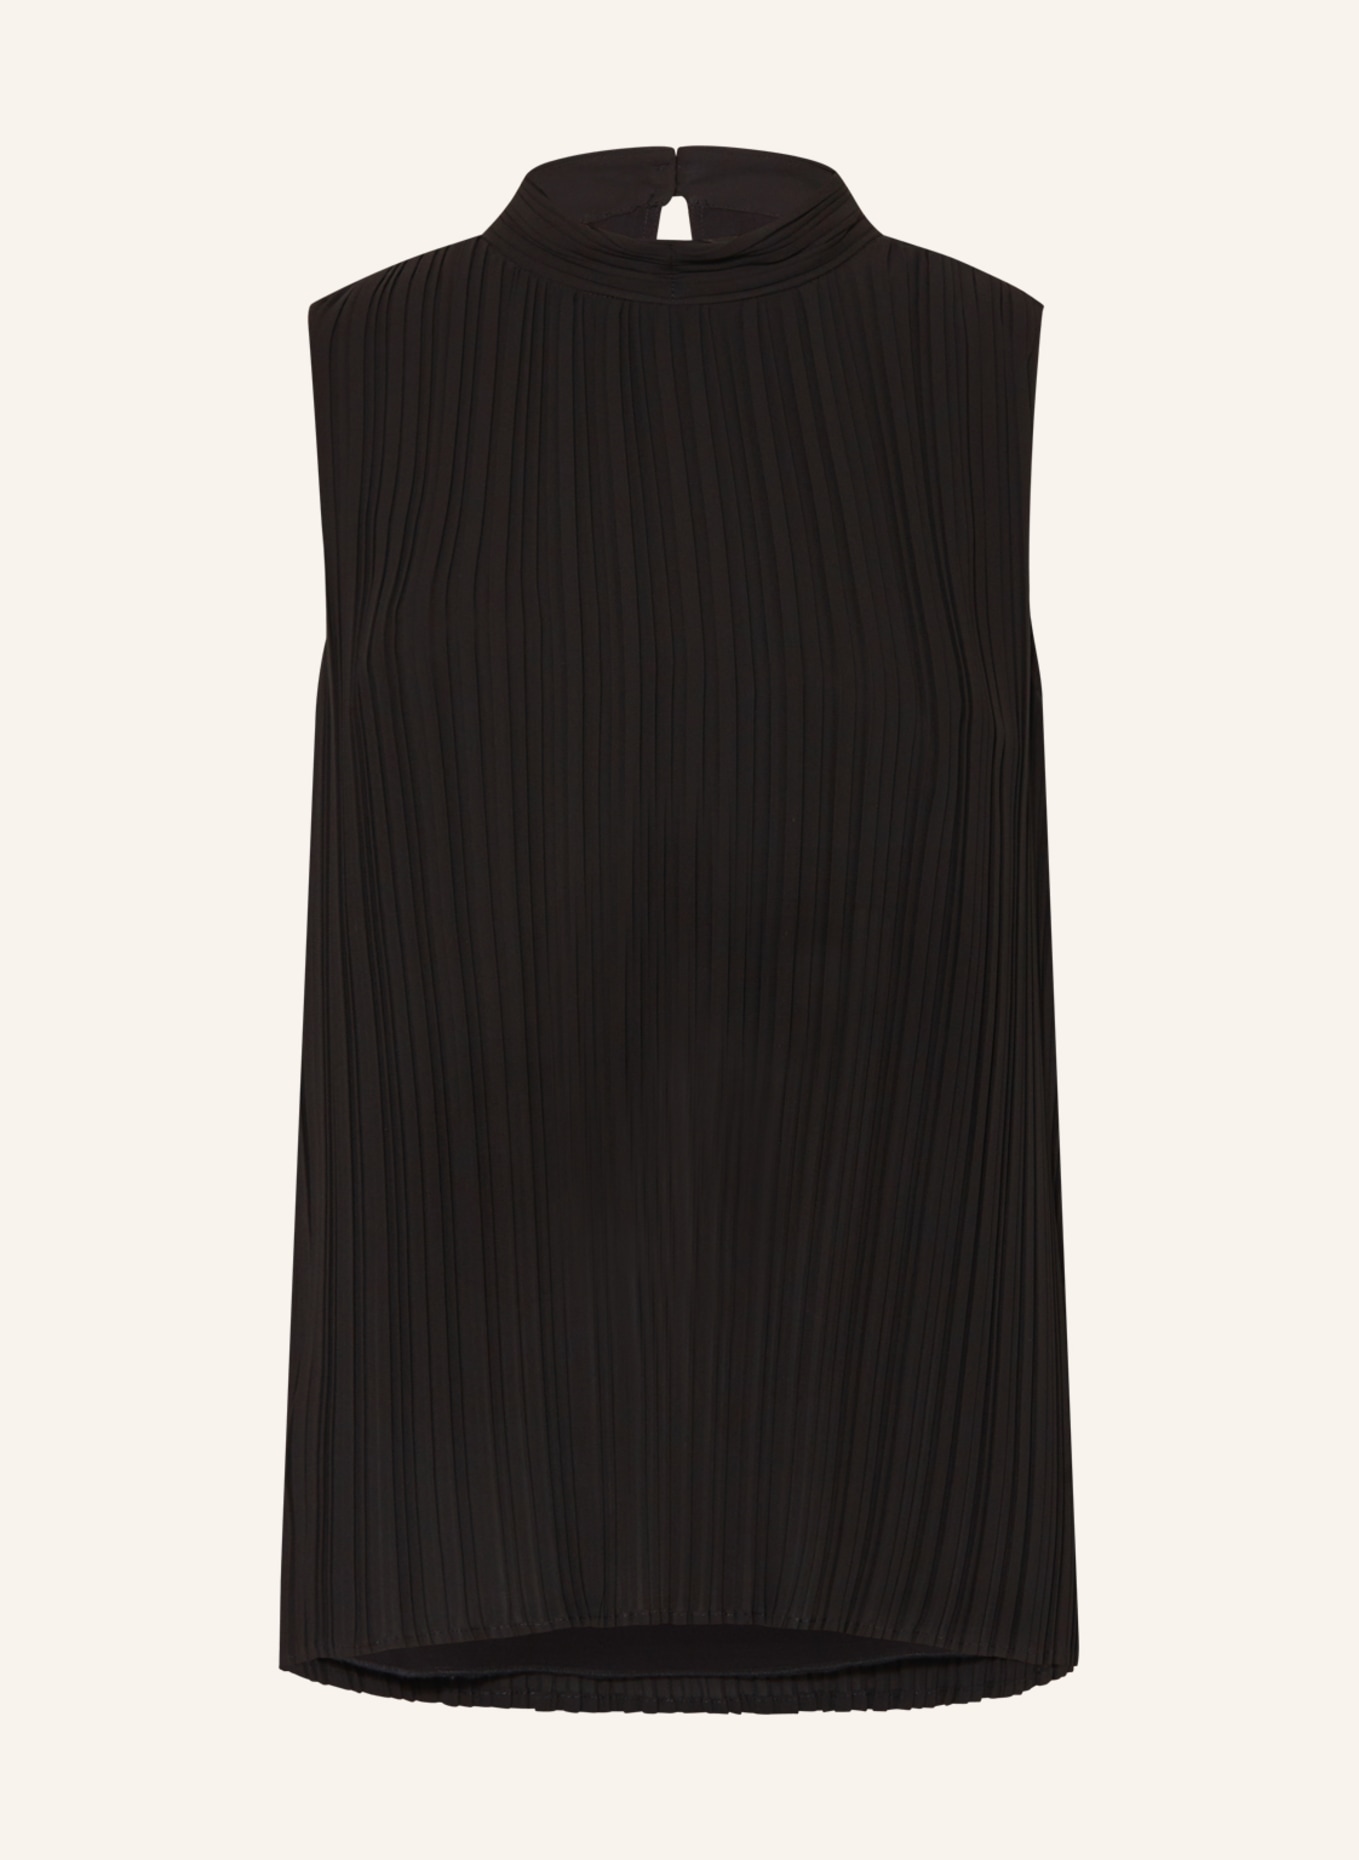 MARC AUREL Blouse top, Color: BLACK (Image 1)